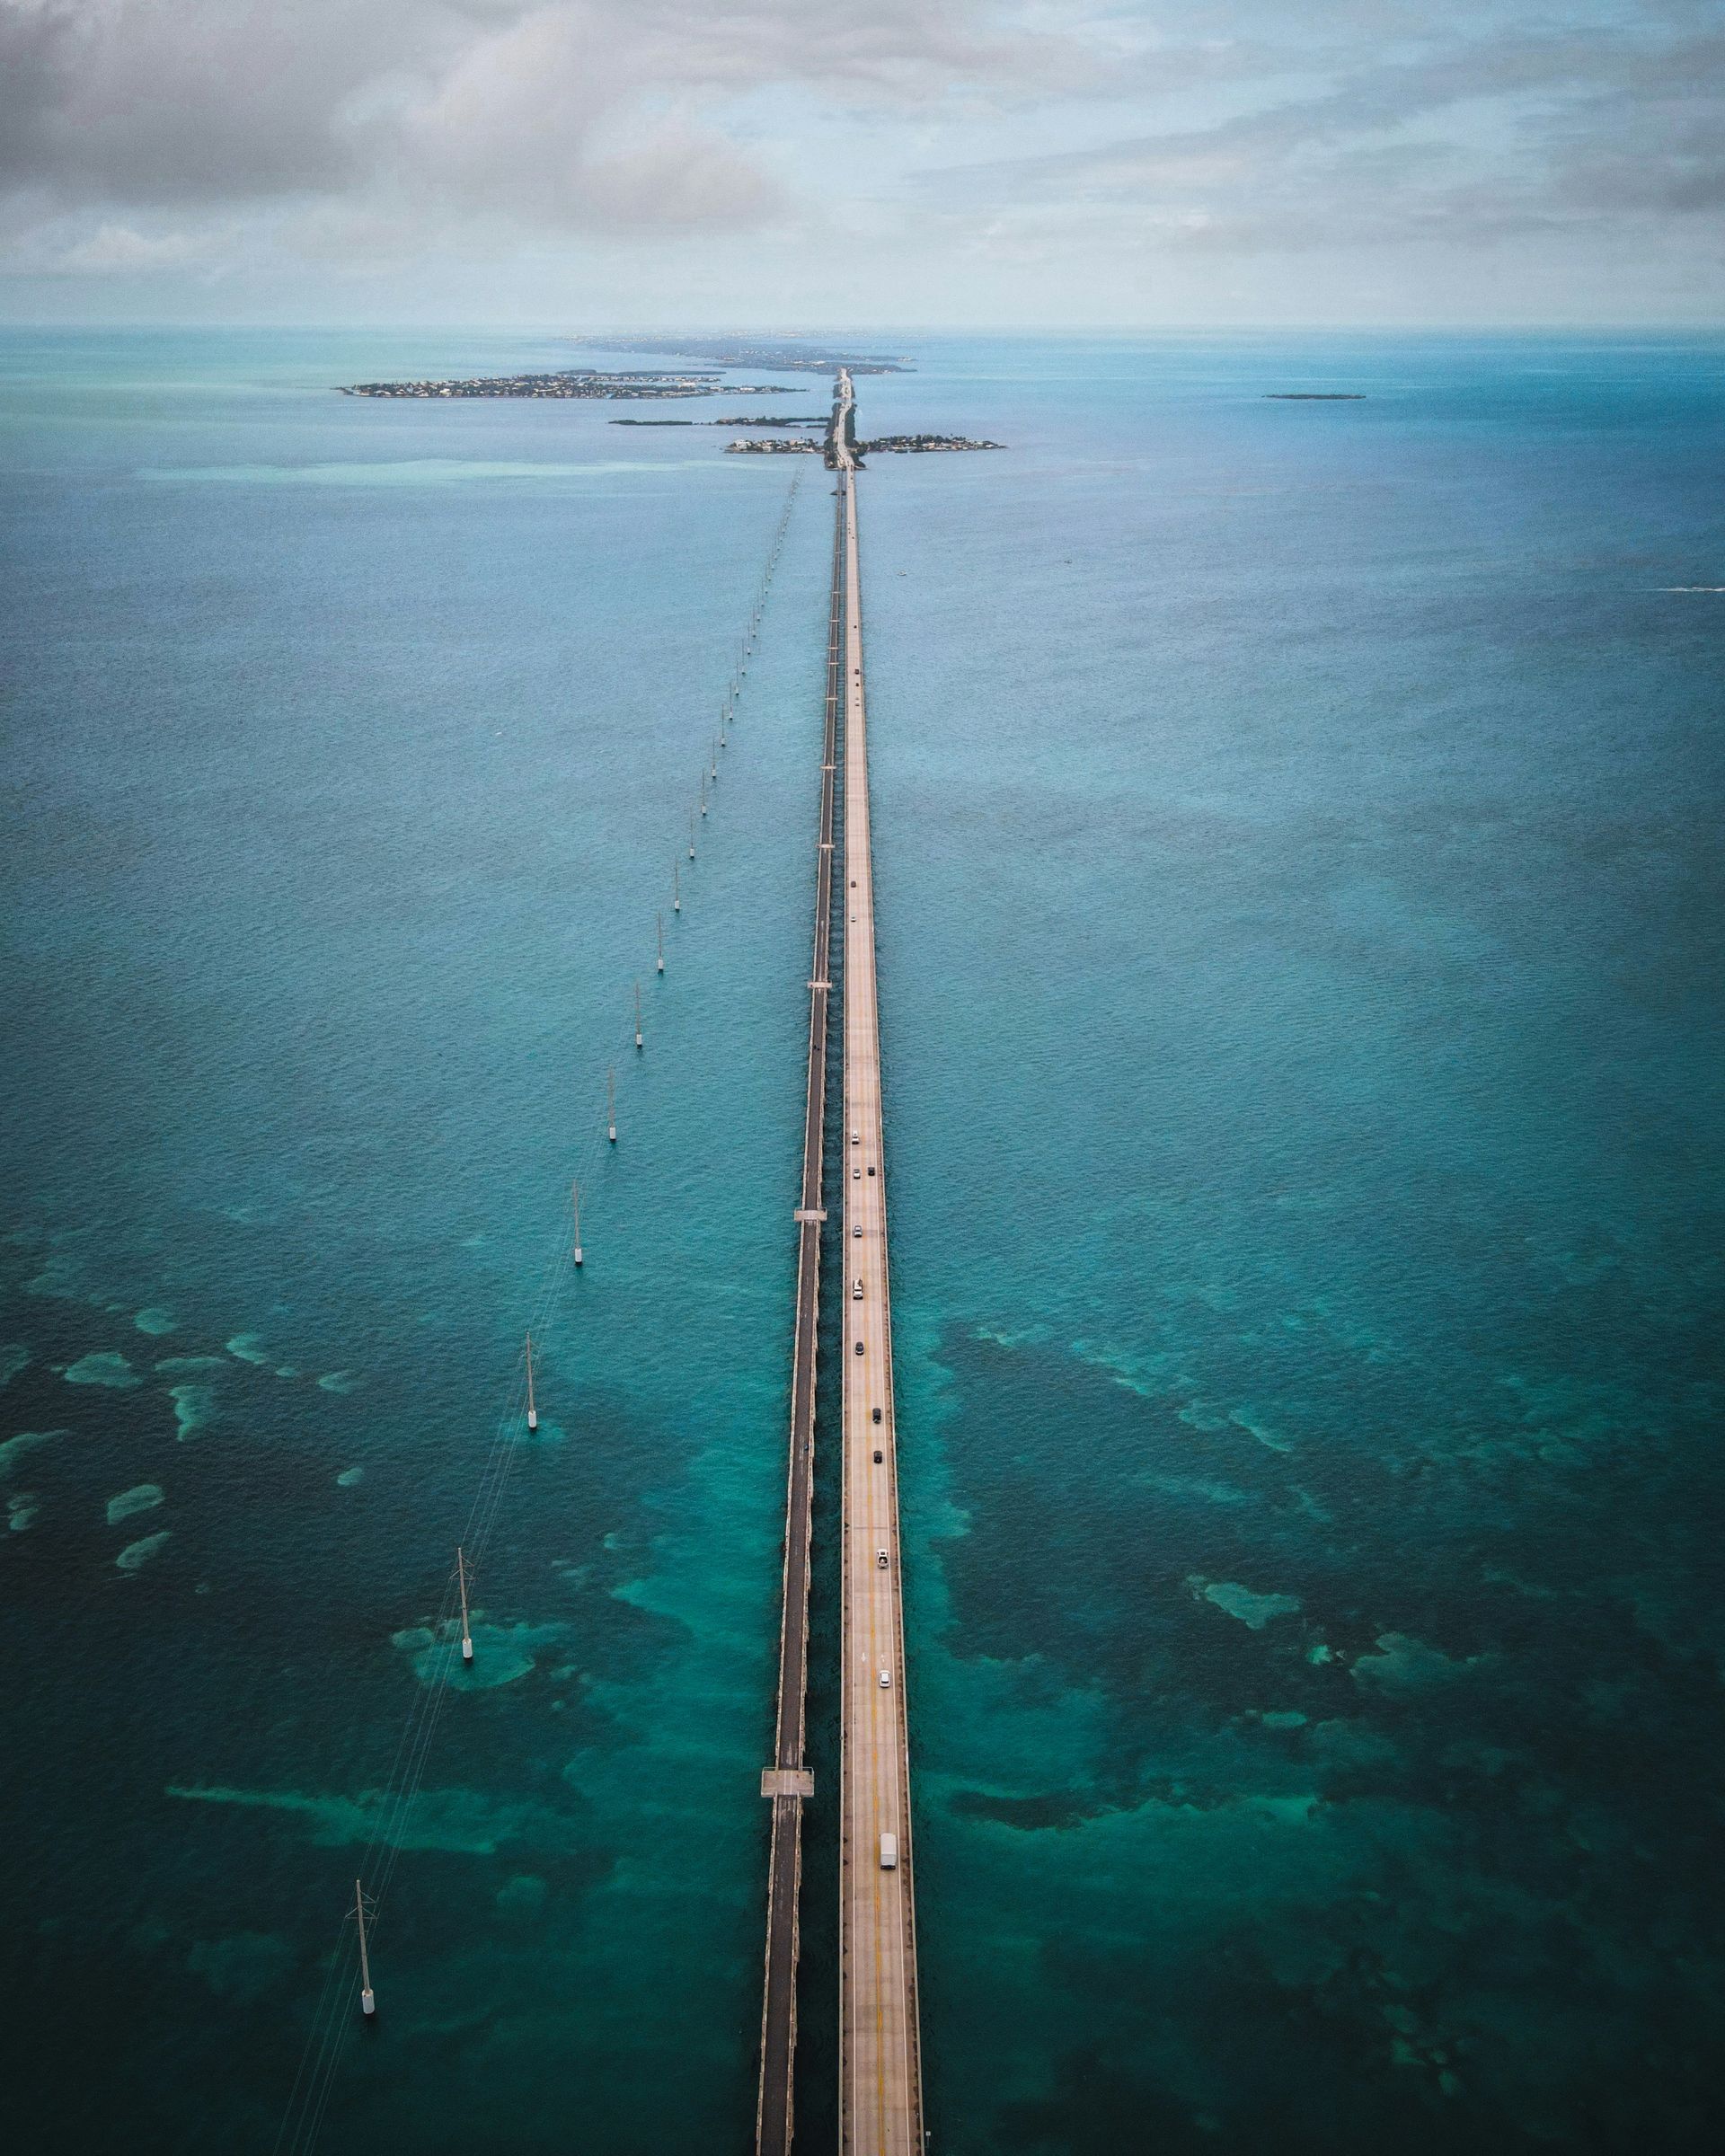 Miami to key west, 7 mile bridge